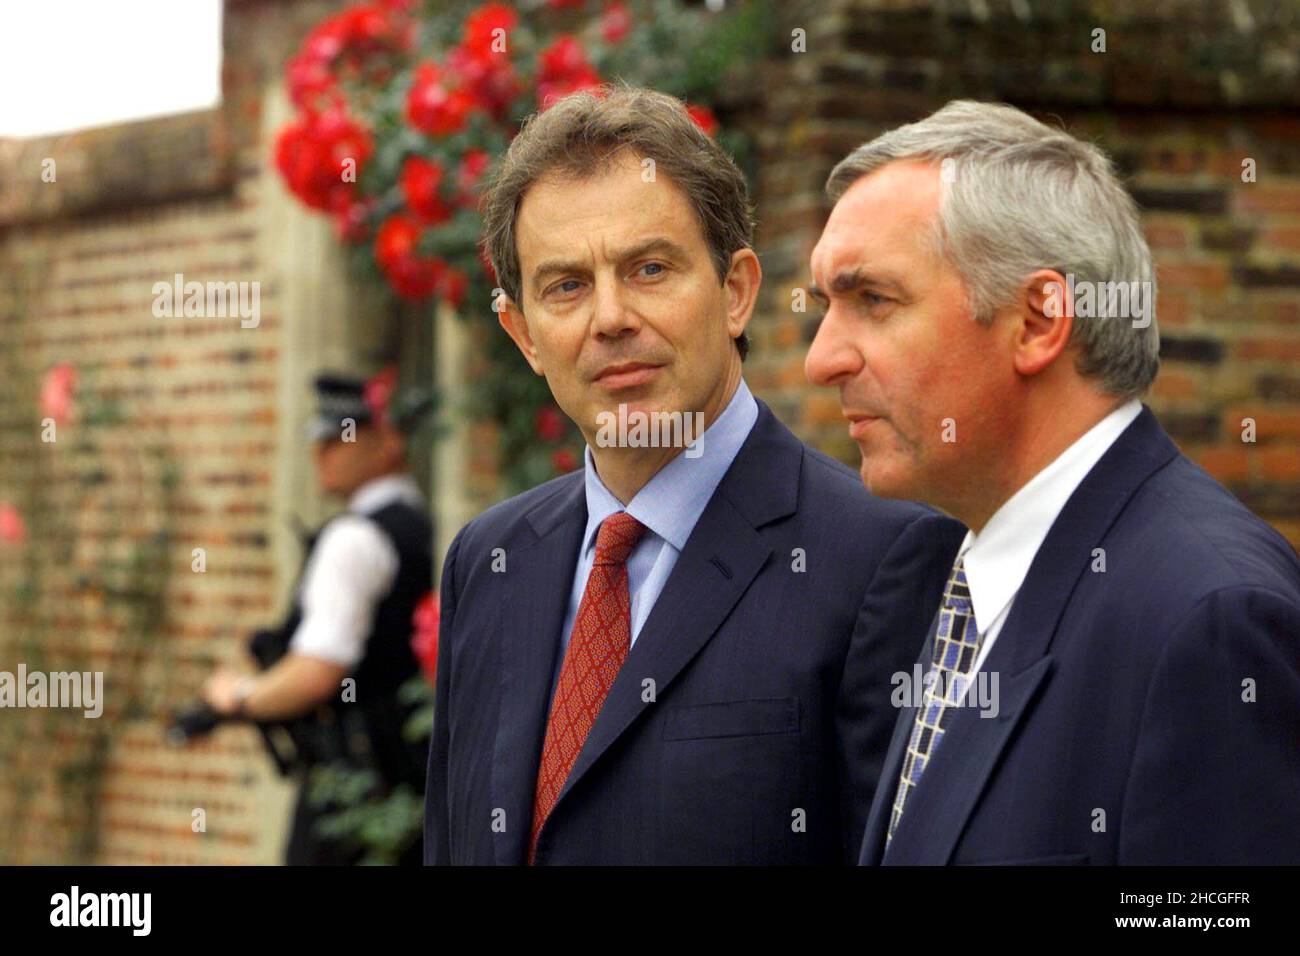 Foto del fascicolo del 09/07/00 dell'allora primo ministro britannico Tony Blair (a sinistra) e del suo omologo irlandese Bertie Ahern, parlando con i media a Chequers, vicino Aylesbury. Data di emissione: Mercoledì 29 dicembre 2021. Foto Stock